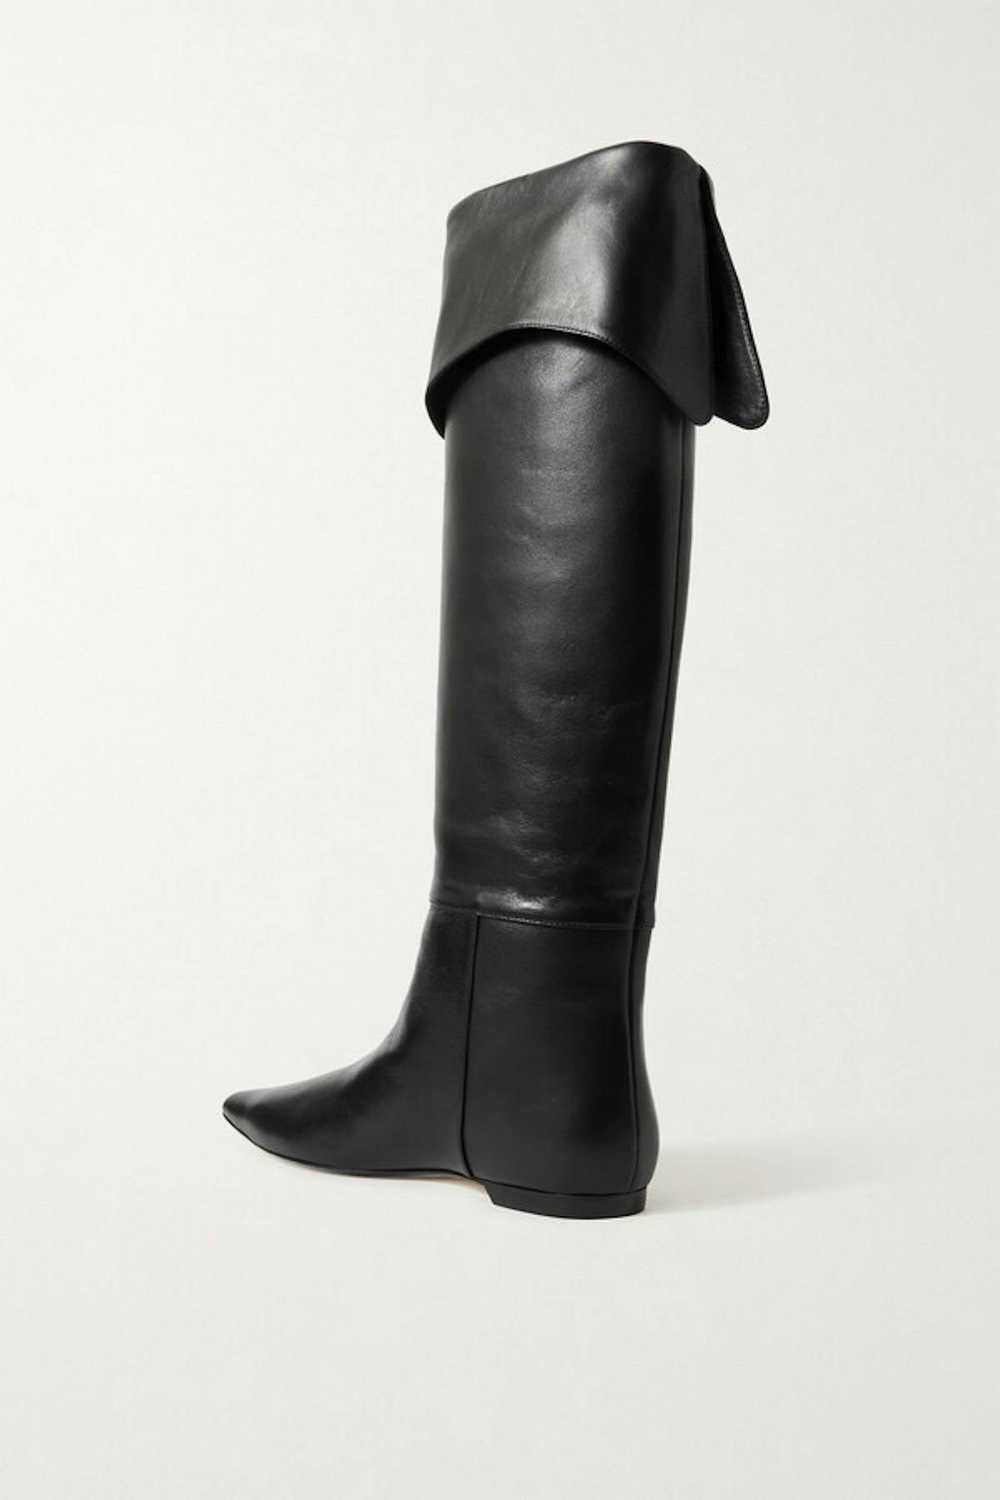 KHAITE KHAITE Diego Leather Knee Boots Size 38.5 - image 2